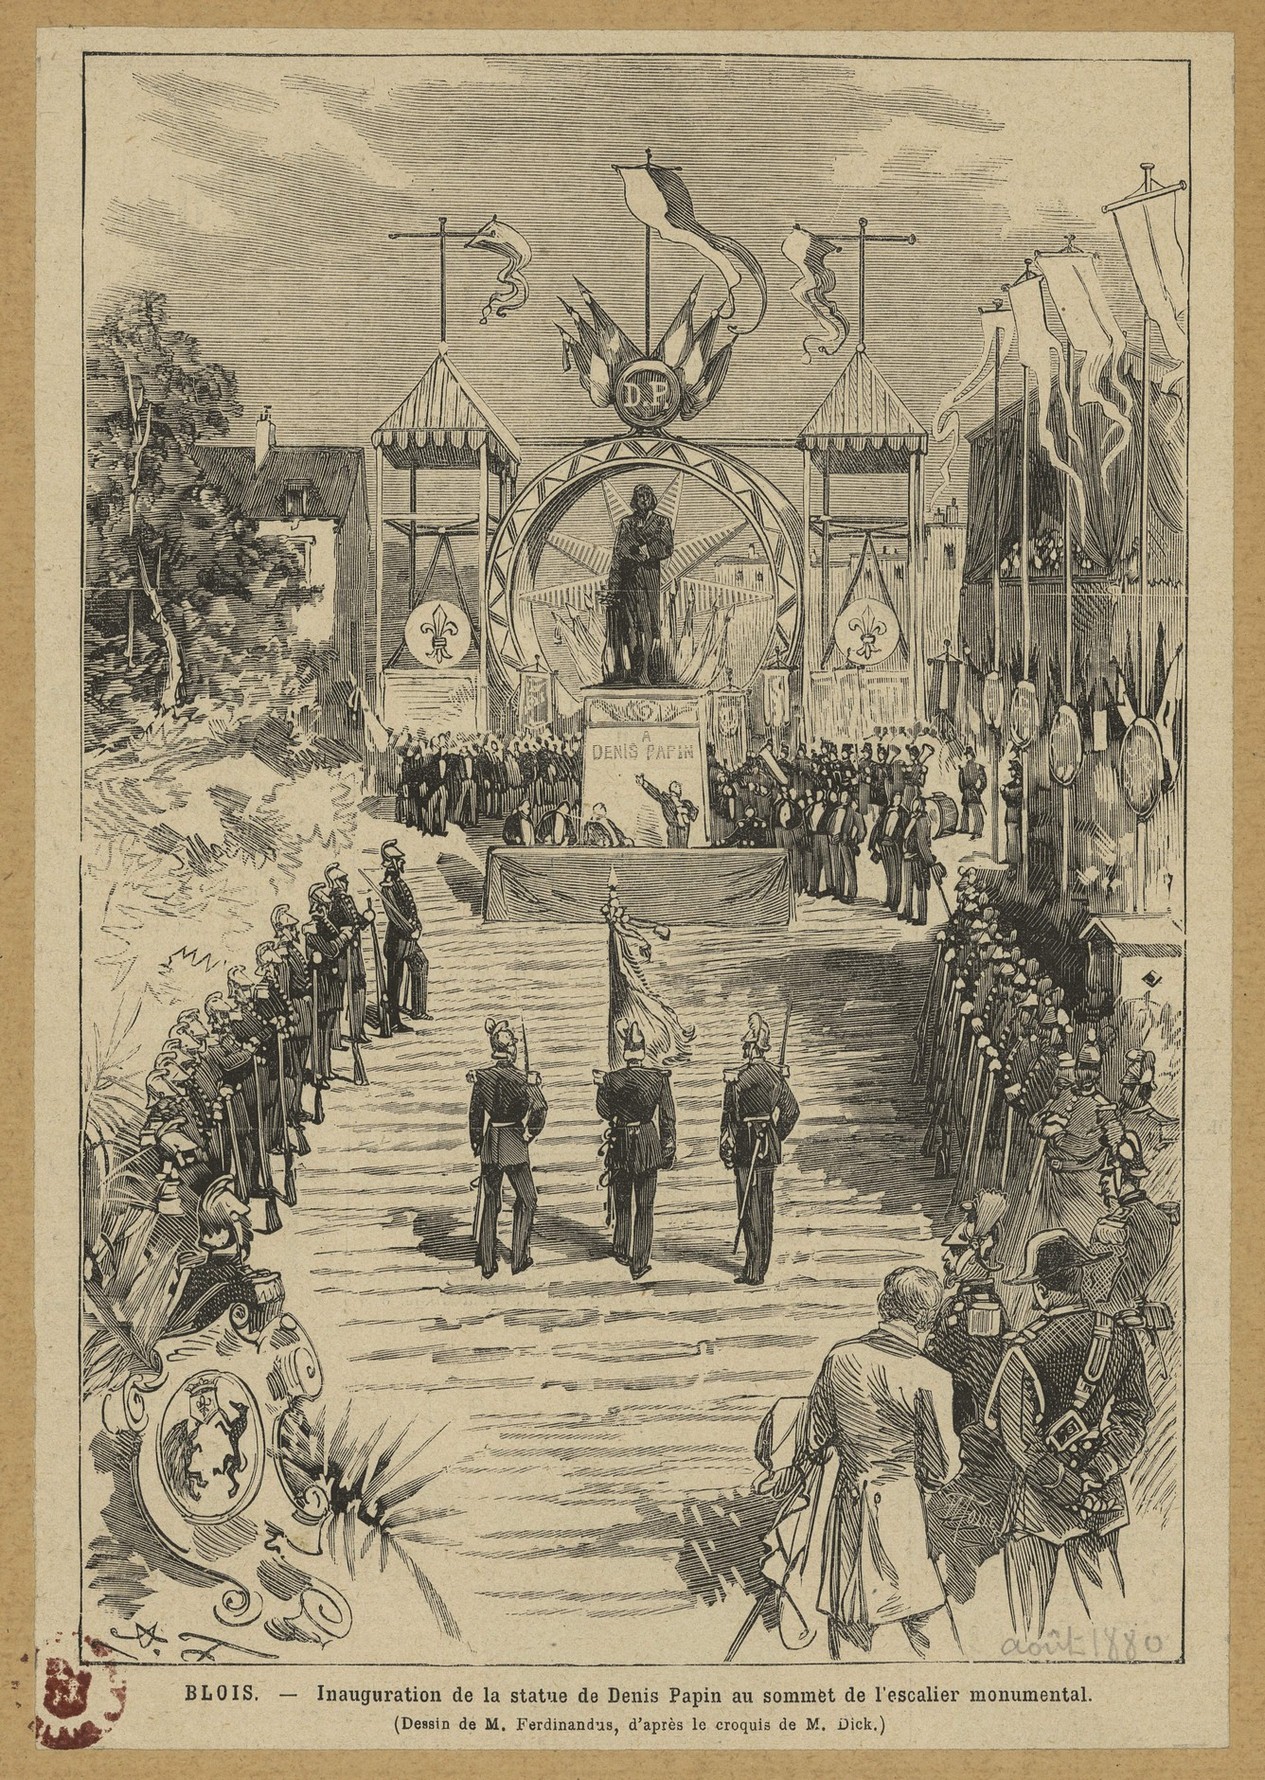 Ferdinandus, Inauguration de la statue de Denis Papin à Blois, 29 août 1880, gravure sur bois